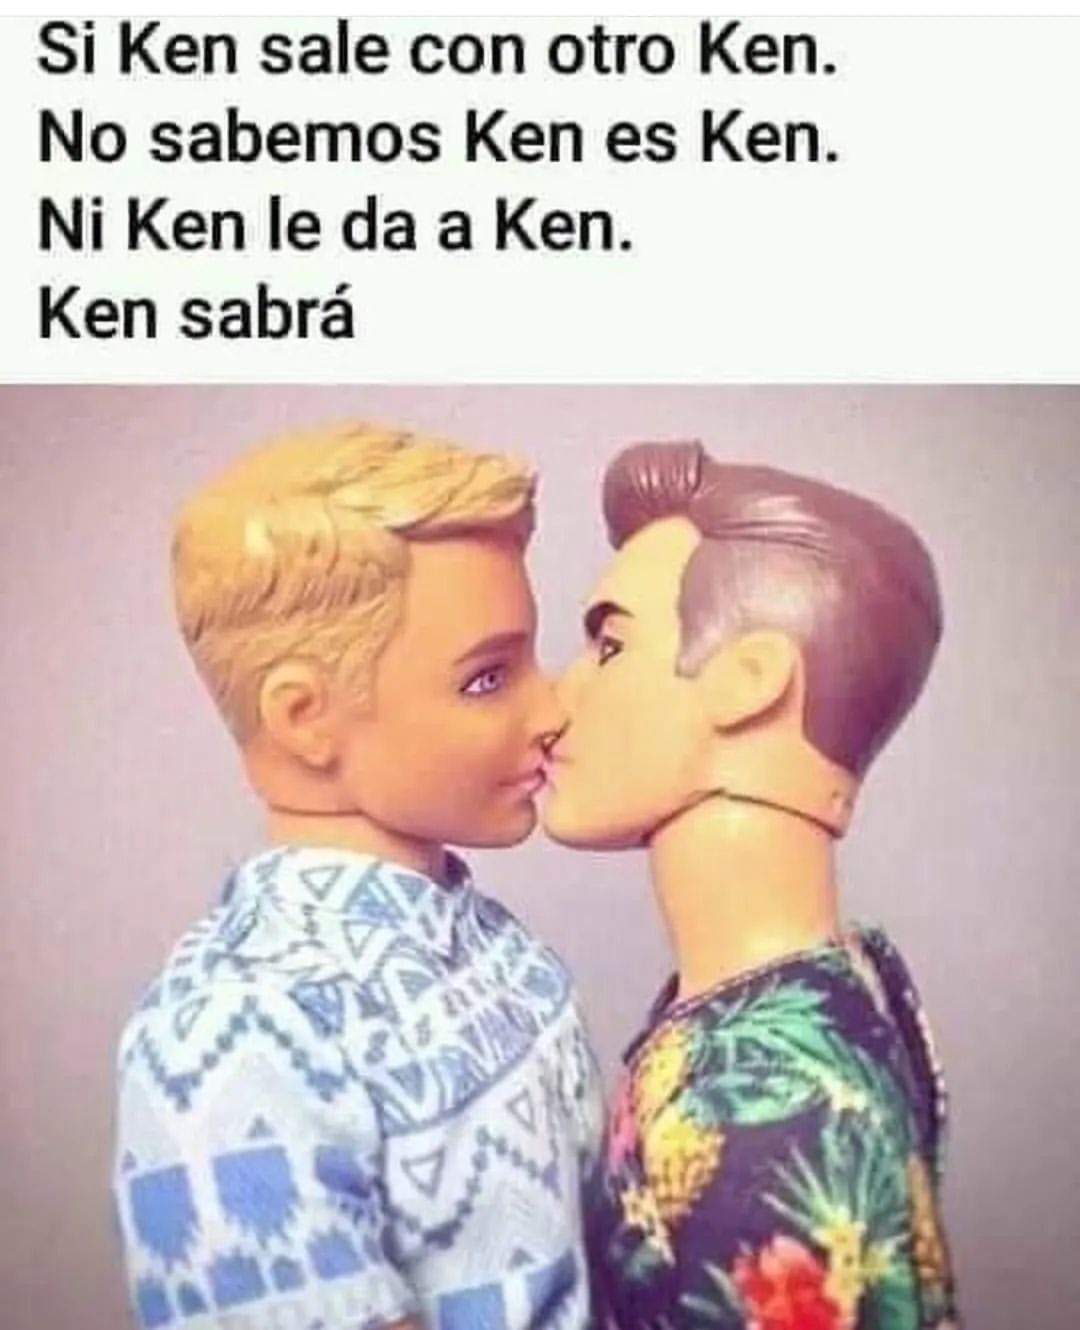 Si Ken sale con otro Ken. No sabemos Ken es Ken. Ni Ken le da a Ken. Ken sabrá.